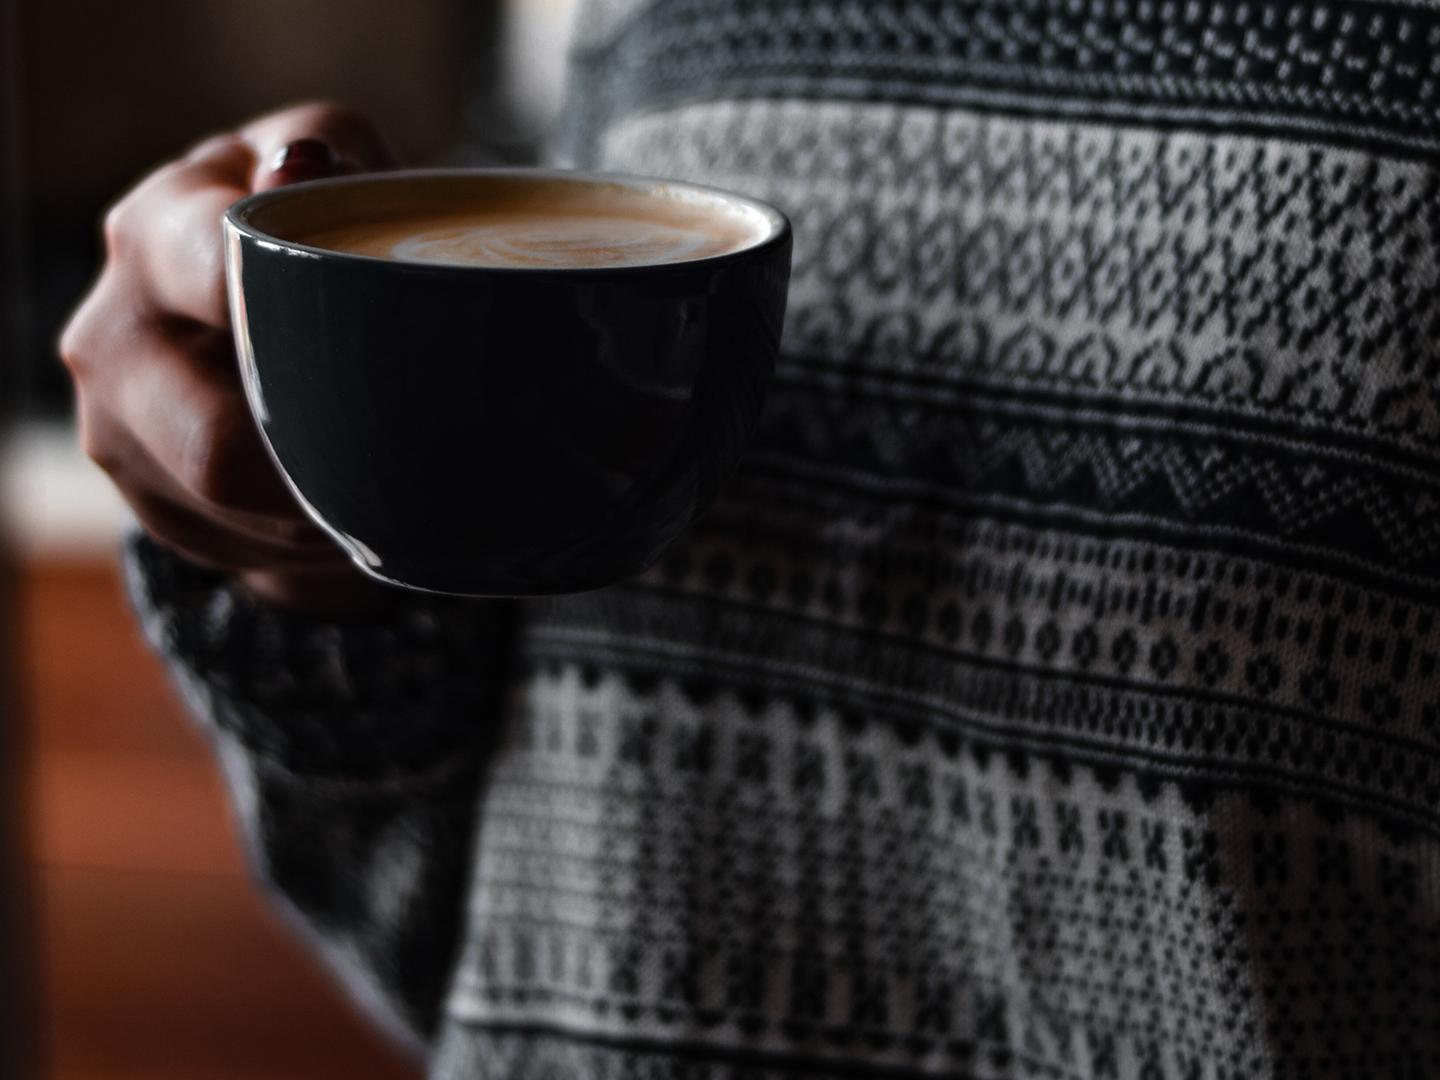 Une femme avec un pull Jacquard tient une tasse à café dans sa main